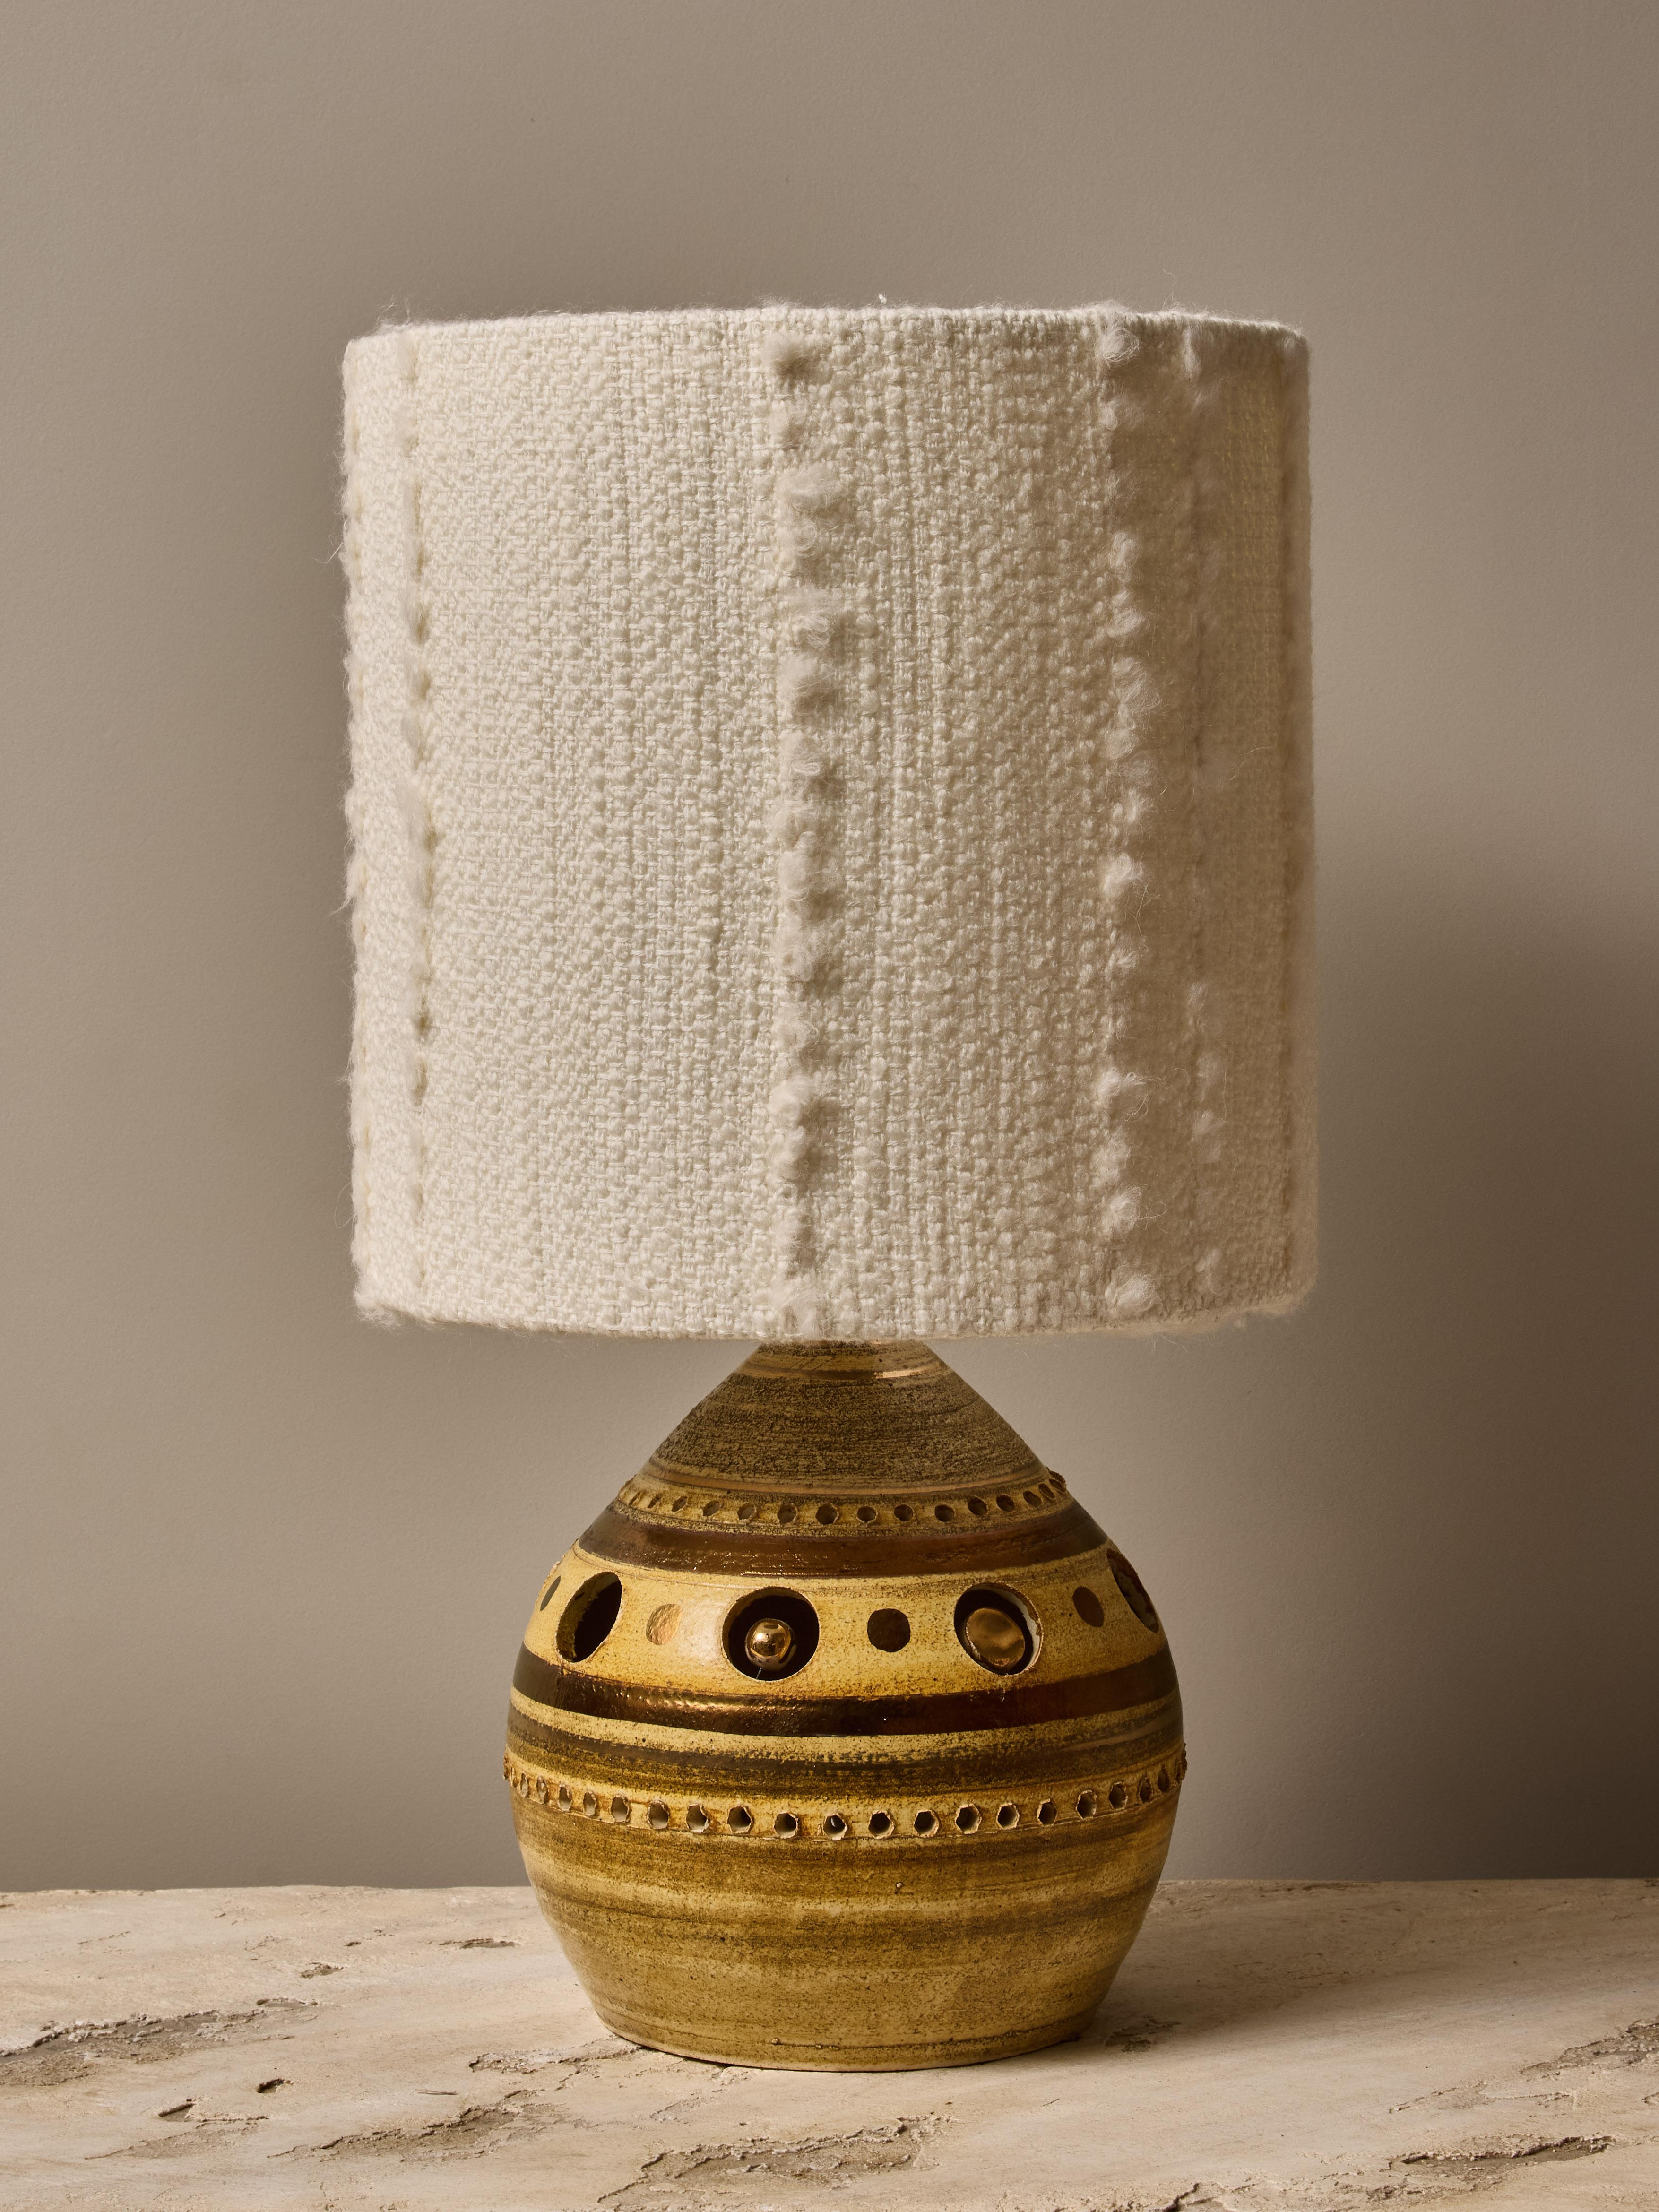 Kleine runde Tischlampe des französischen Künstlers George Pelletier, glasiert in verschiedenen Grün- und Brauntönen mit goldenen Akzenten und mit einem modernen Lampenschirm versehen.

Abmessungen mit den Schirmen: ø25 H45cm

Der 1938 in Brüssel,